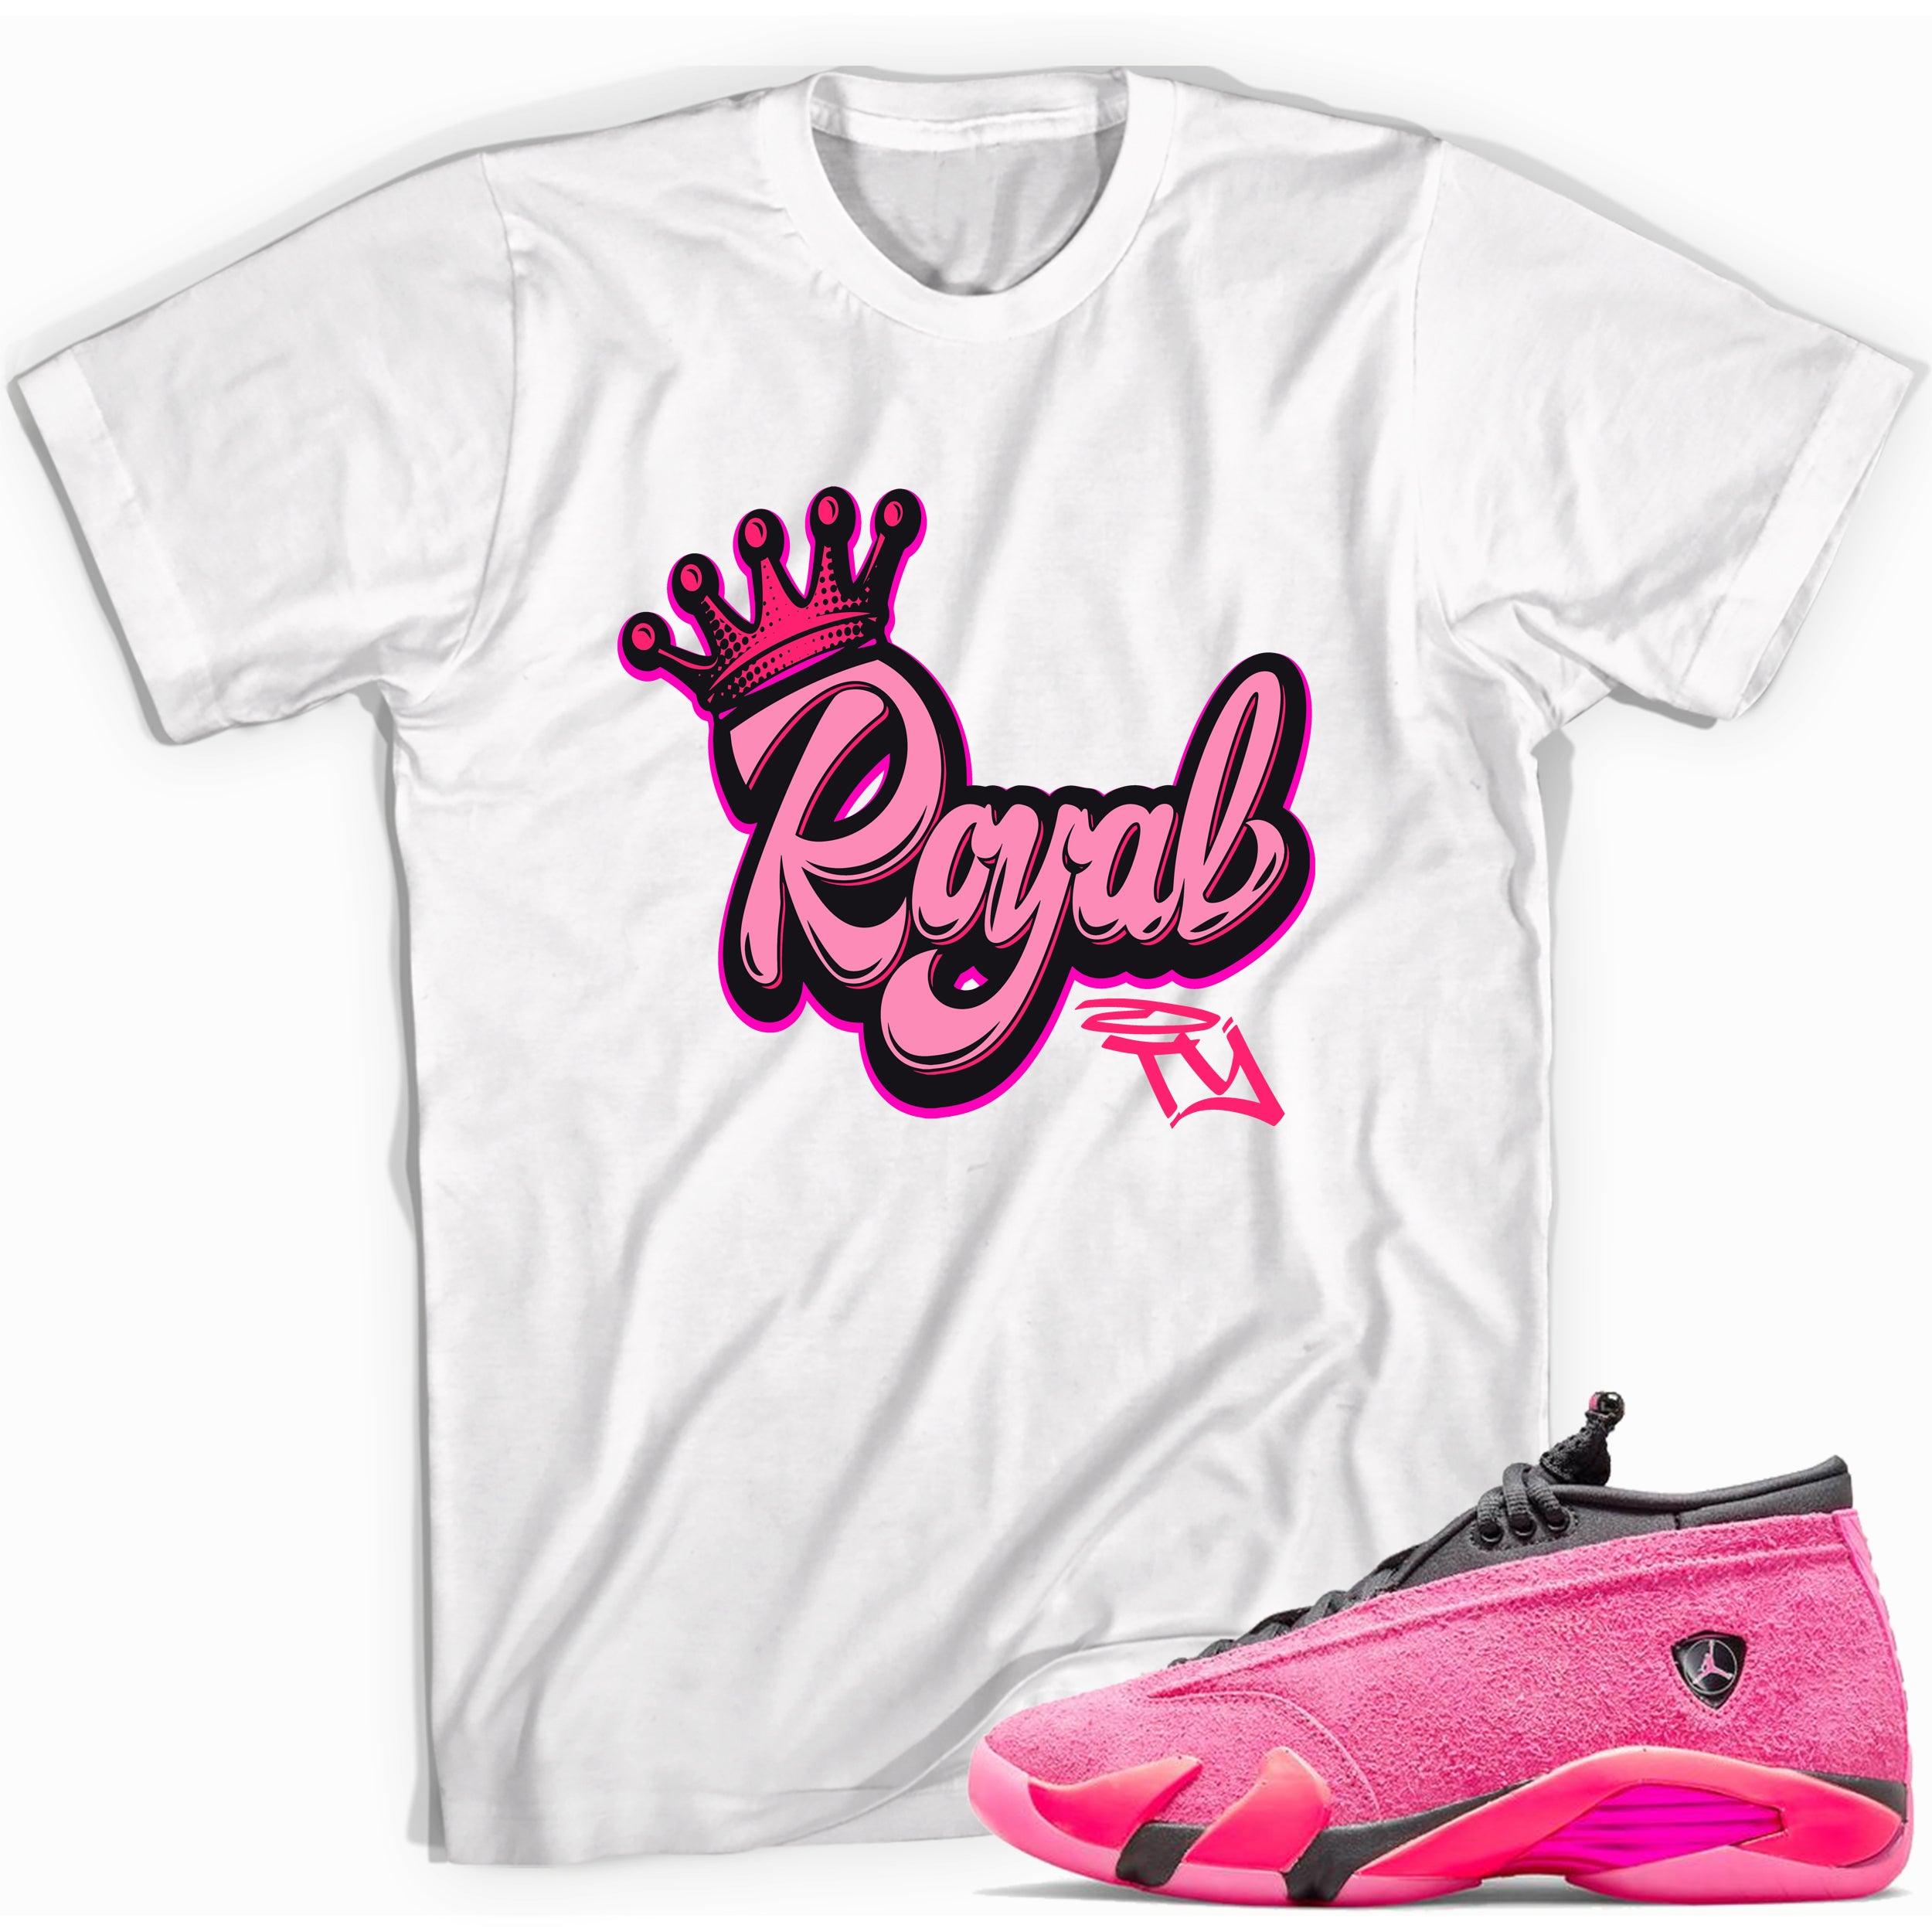 Royalty Shirt Jordan 14s Low Shocking Pink photo